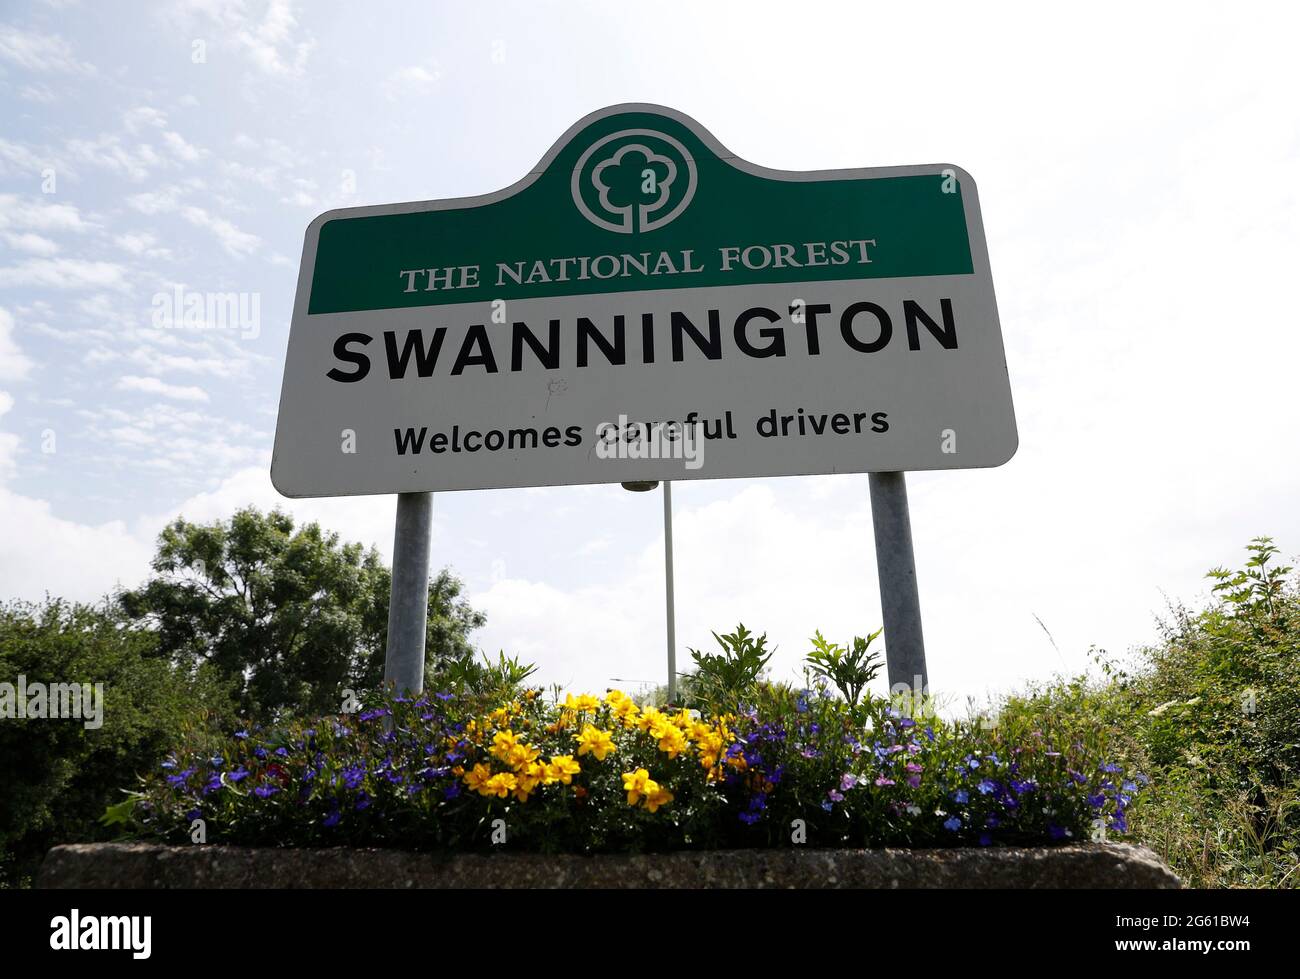 Swannington, Leicestershire, Regno Unito. 1 luglio 2021. Un cartello dà il benvenuto ai conducenti attenti. Swannington è un ex villaggio minerario situato tra Coalville e. Foto Stock